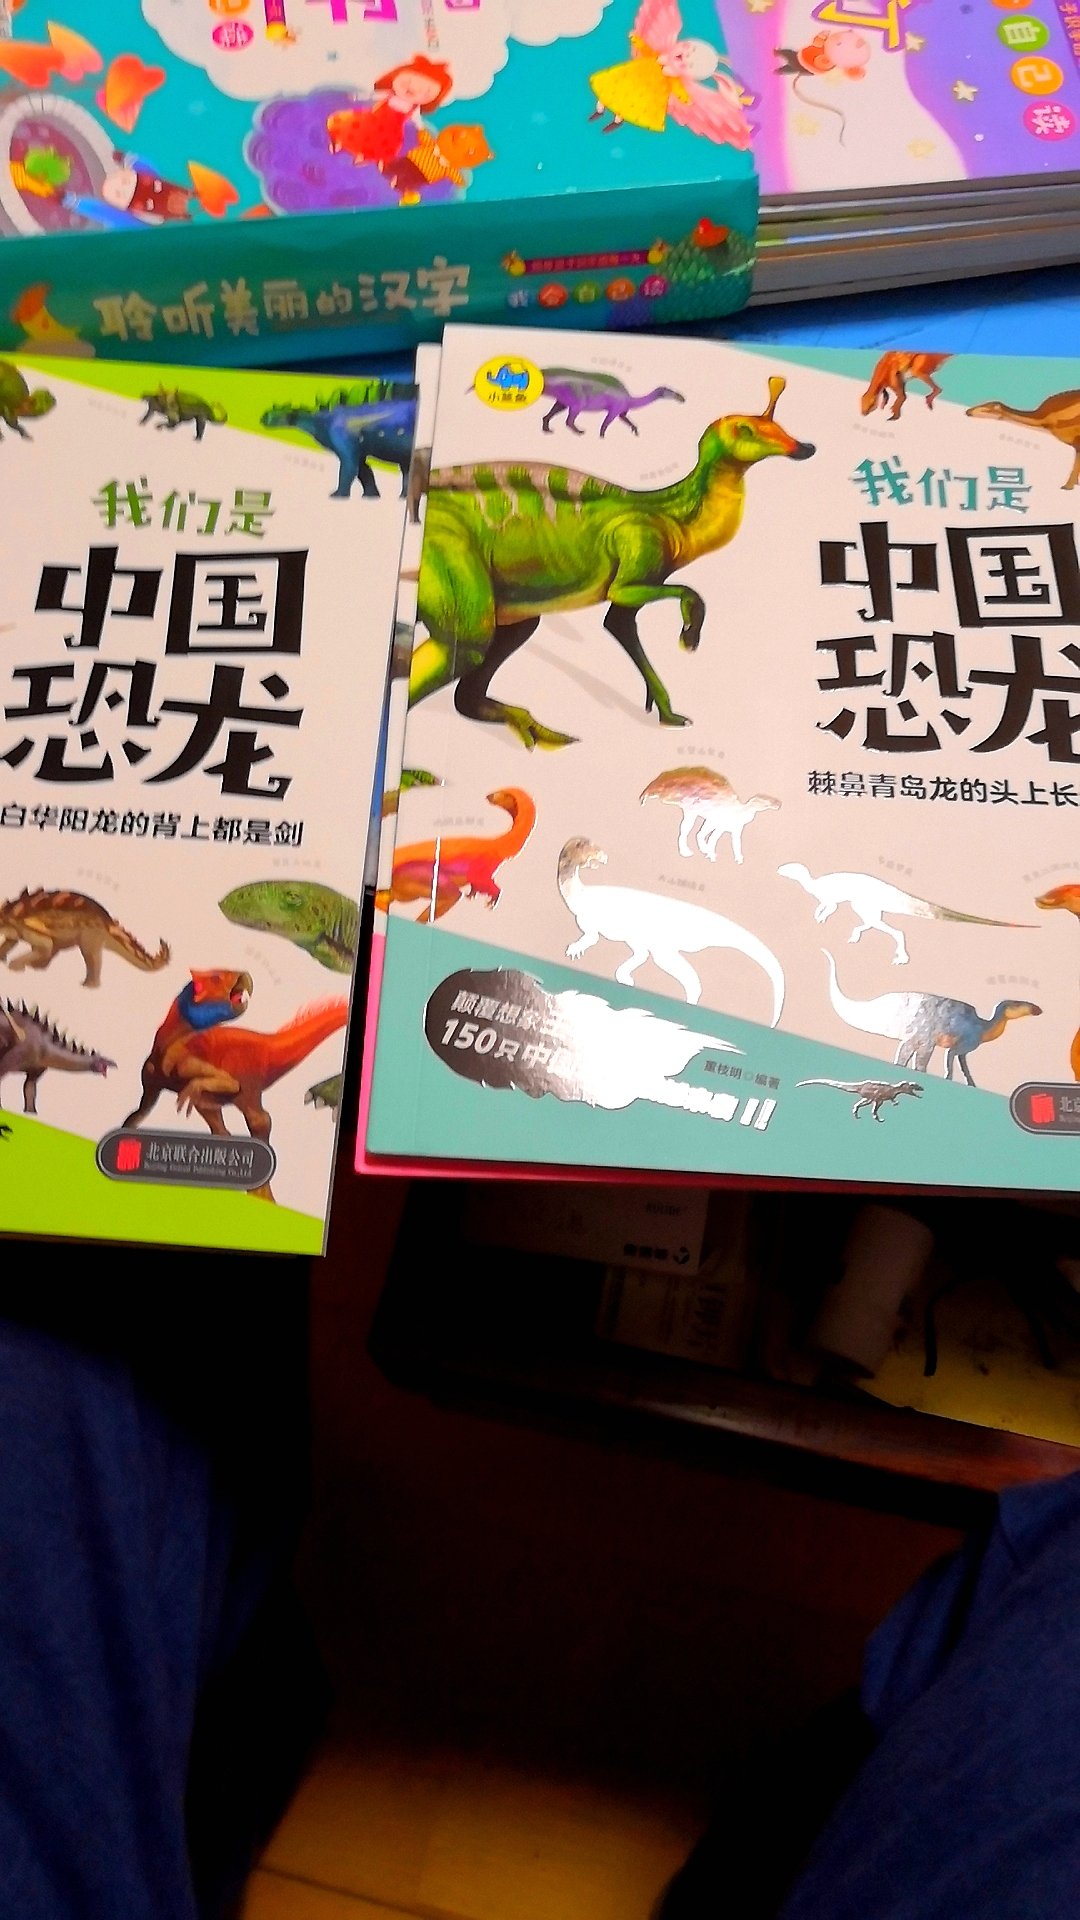 幼儿园儿童十分喜欢又非常好奇的动物，这本书比较全面，贴近儿童，图文并茂，知识内容比较全面。值得推荐。